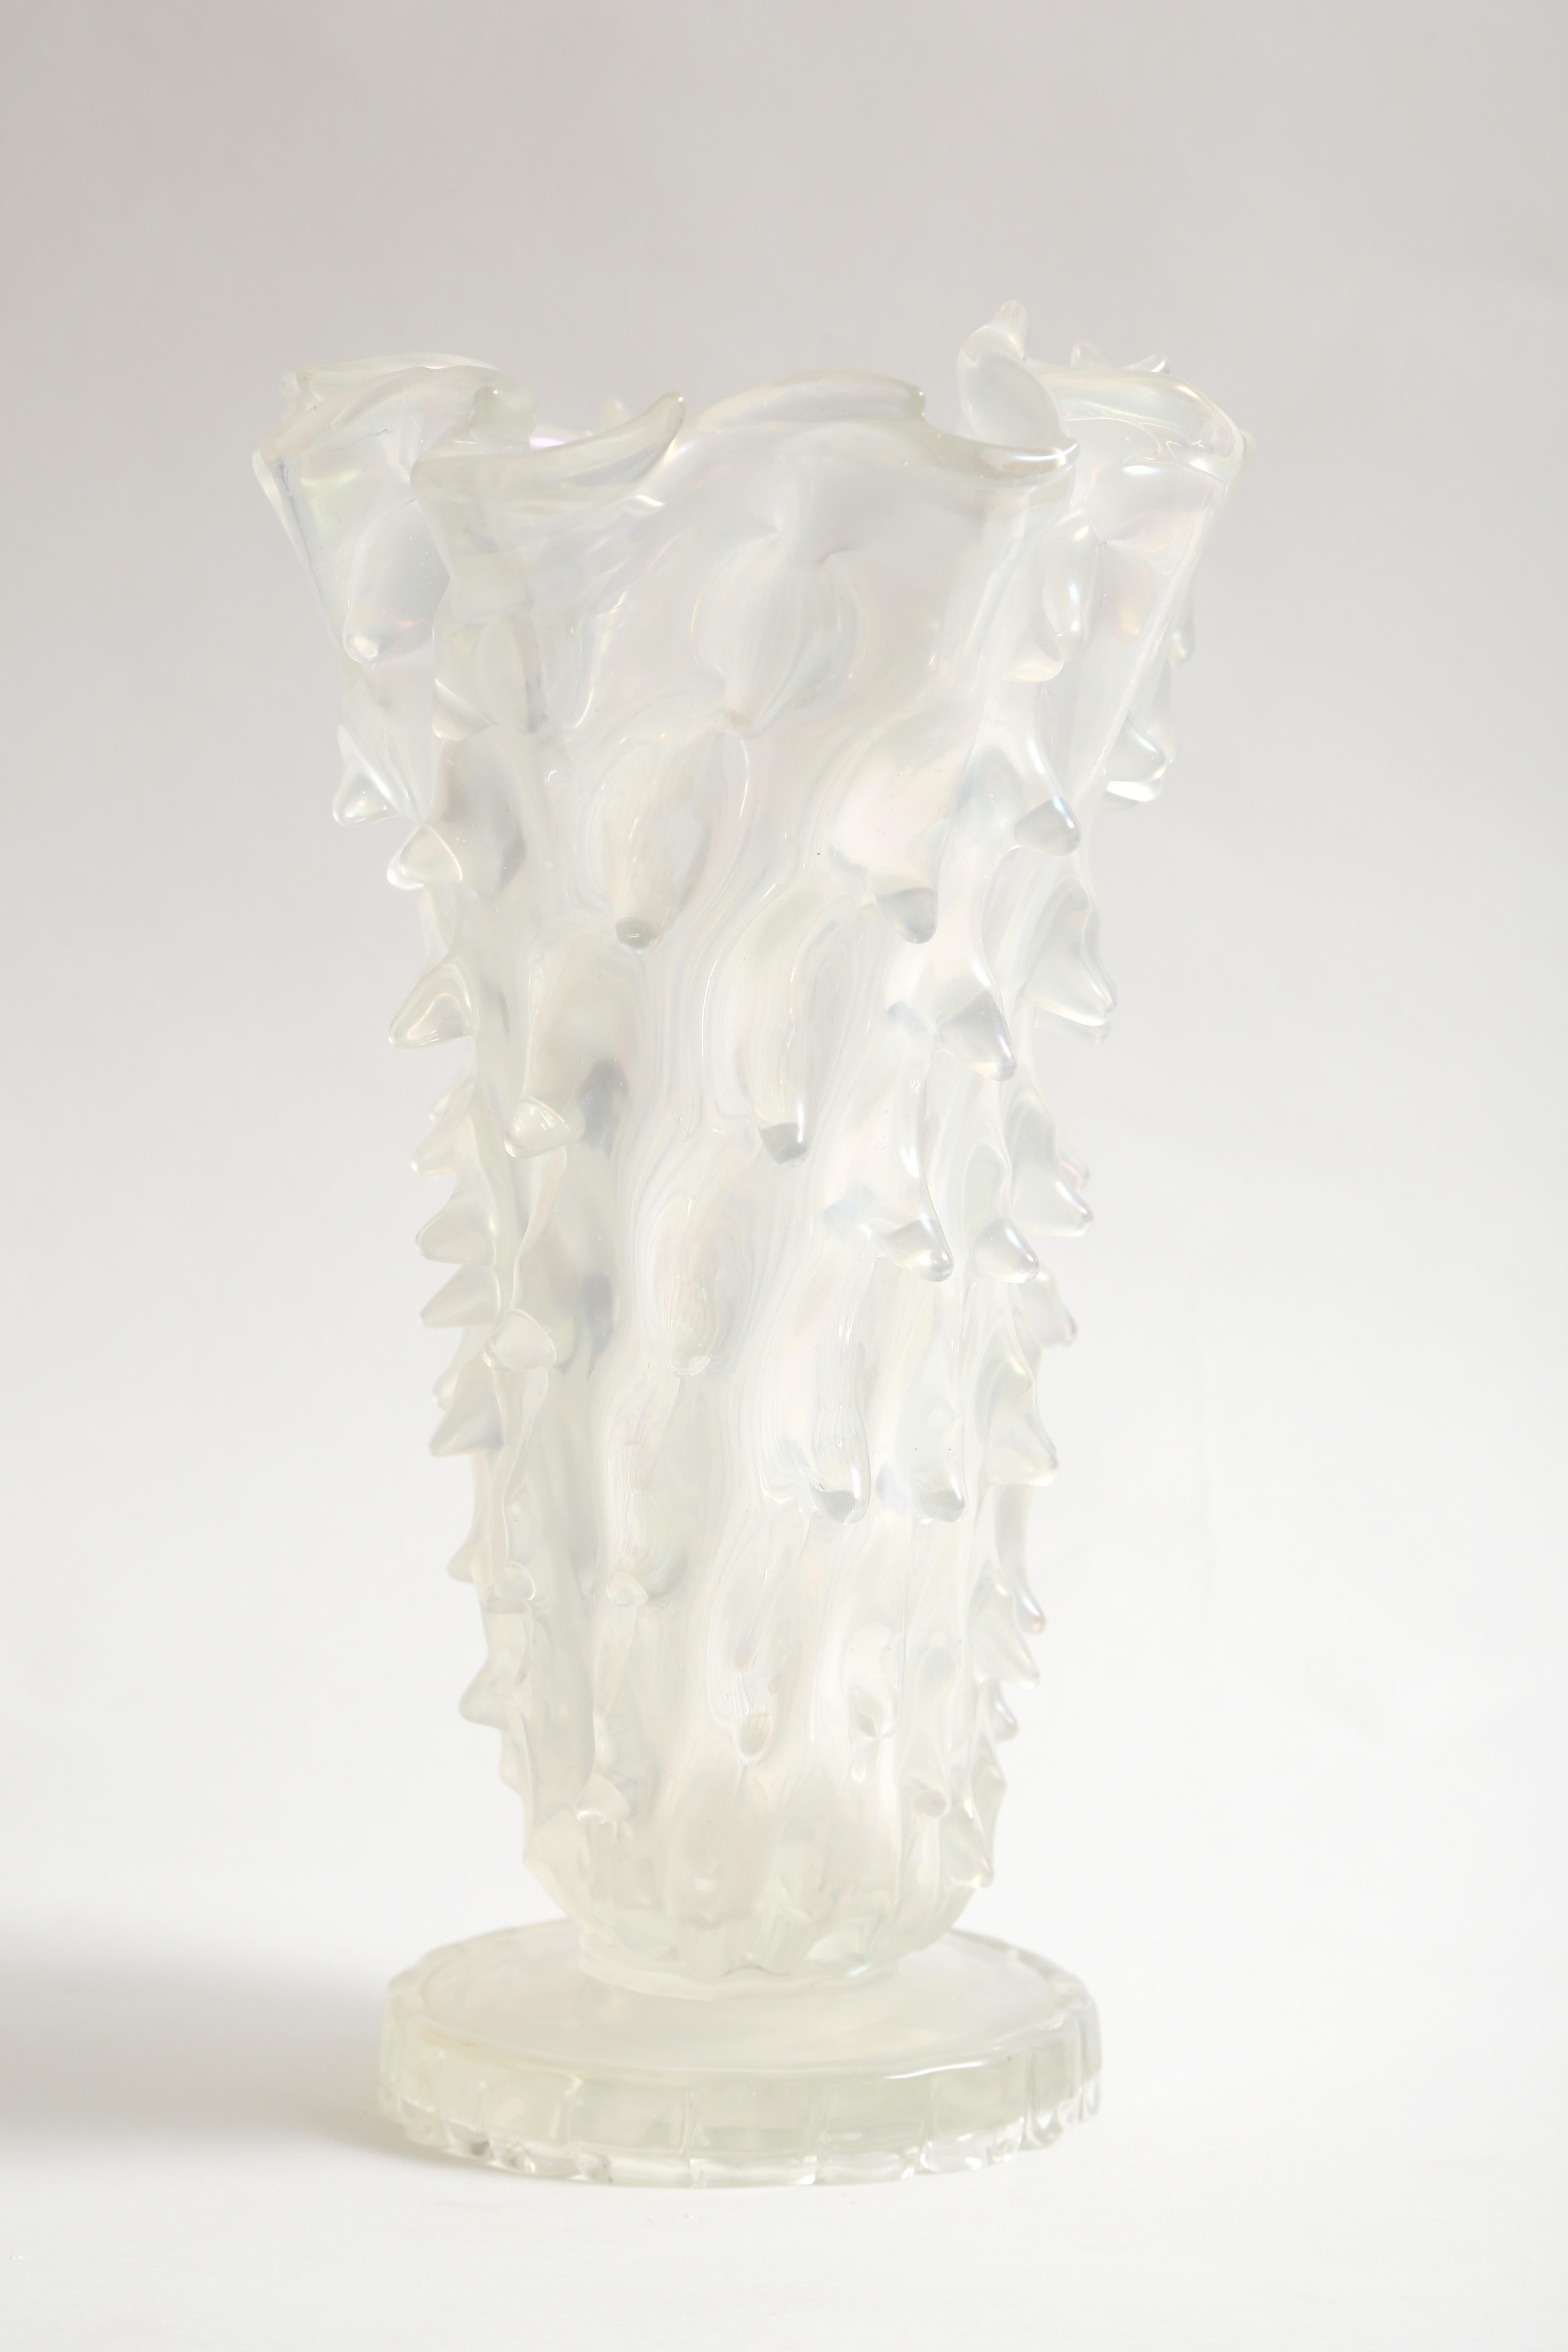 Art Glass Barovier and Toso Medusa Vase